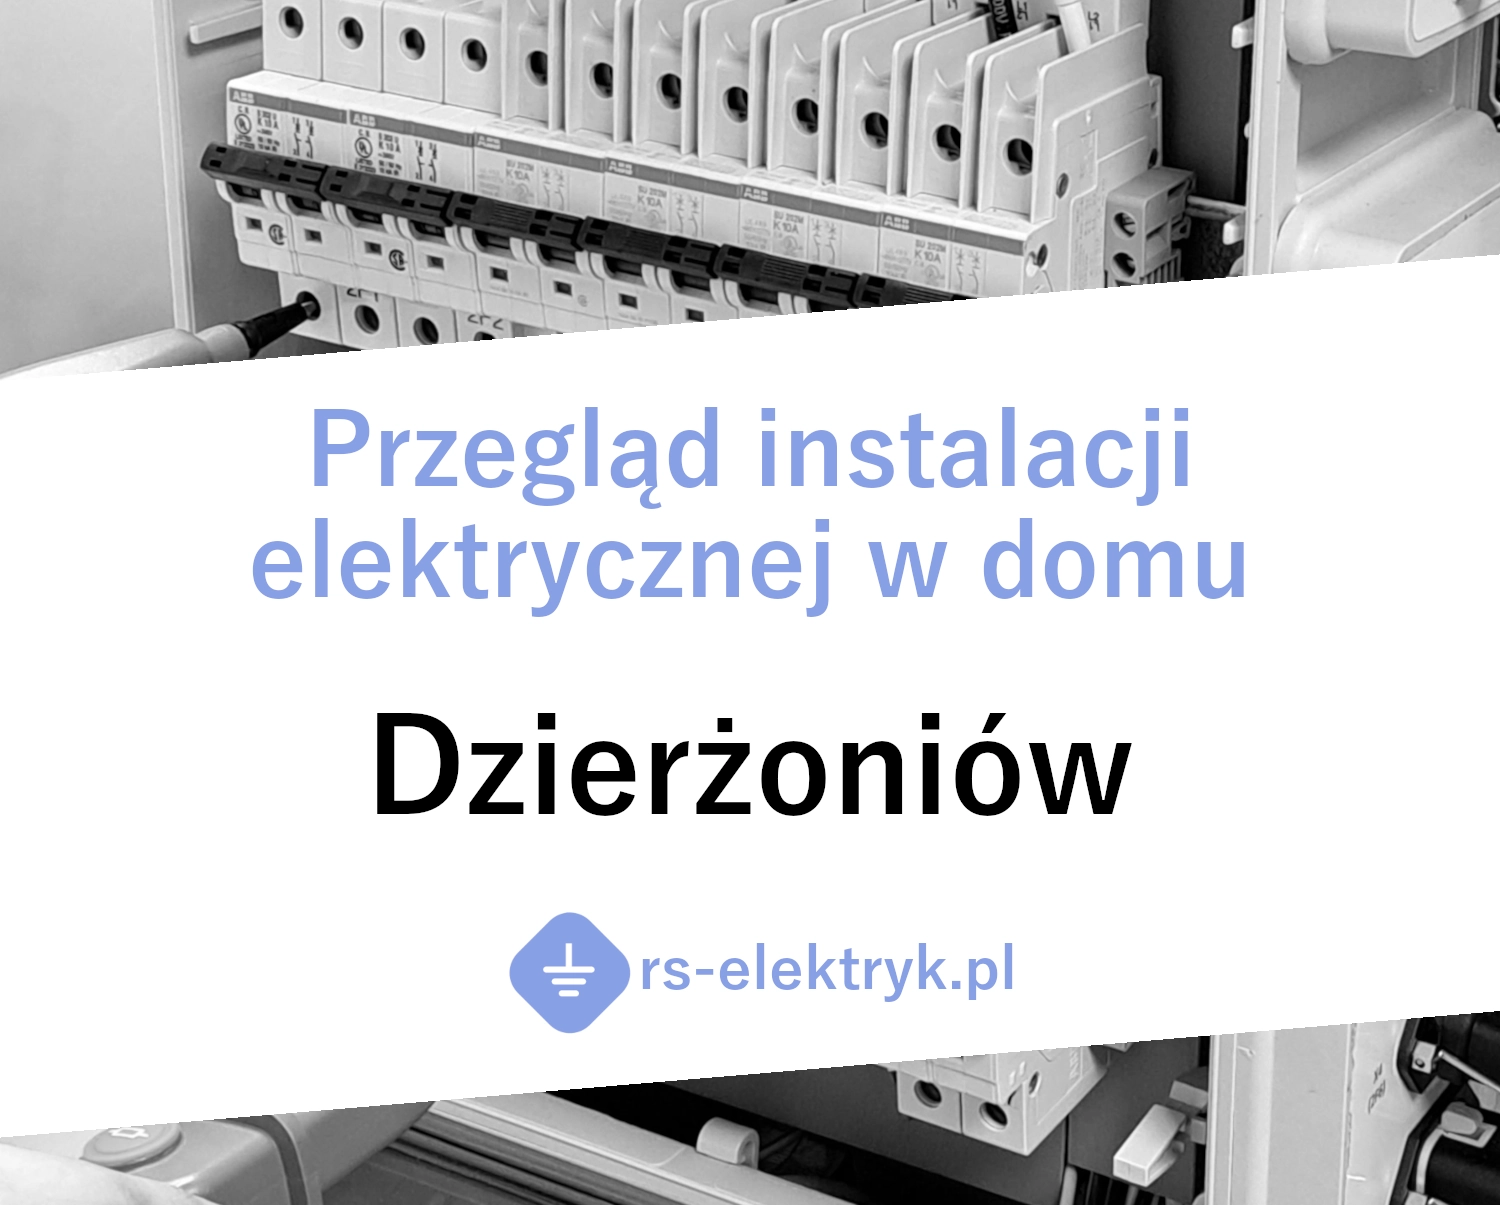 Przegląd instalacji elektrycznej w domu Dzierżoniów